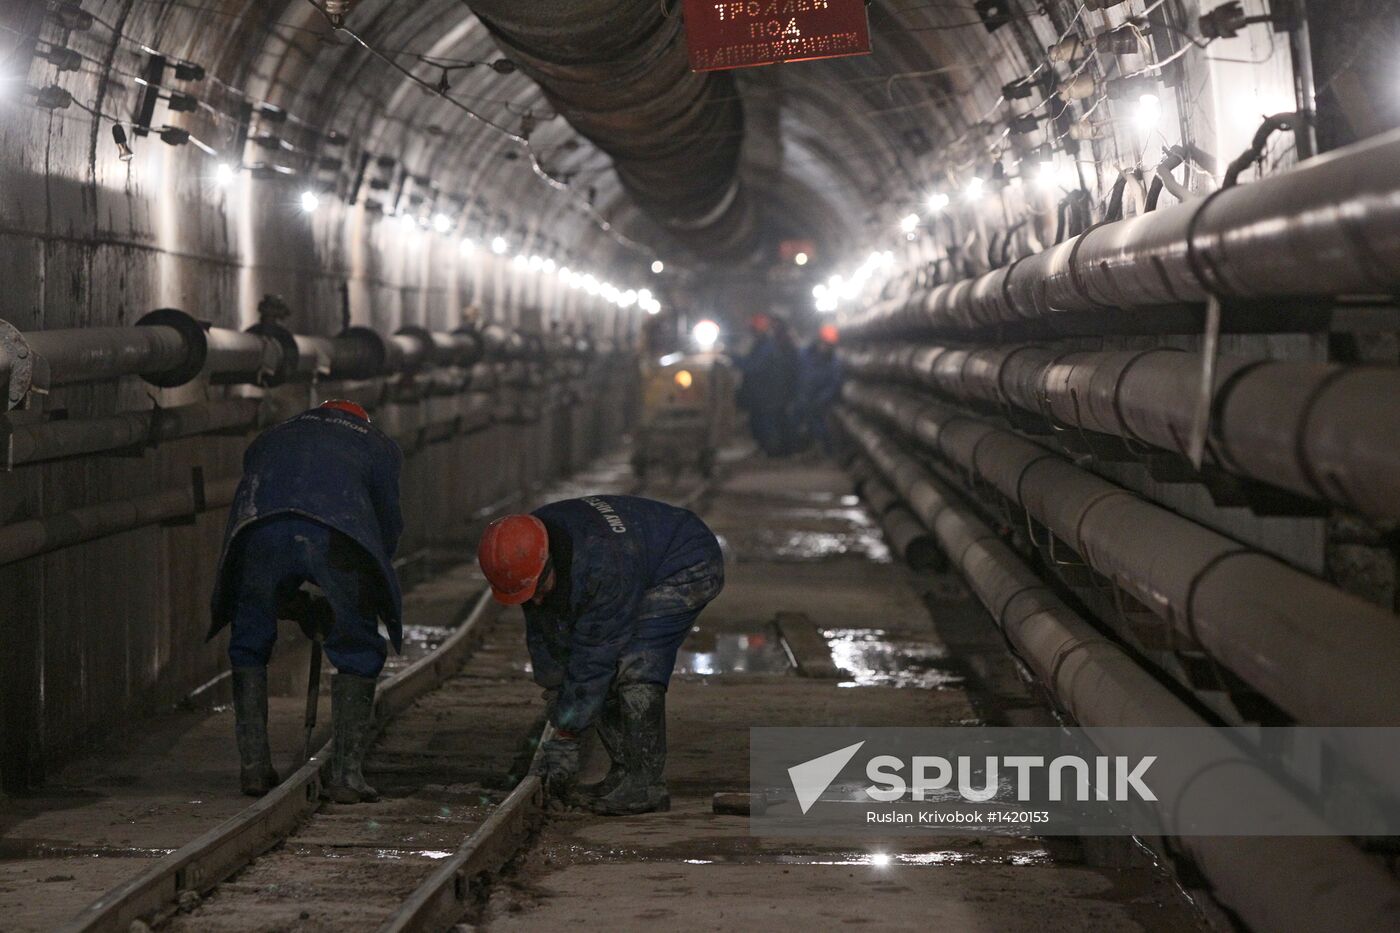 Tunnels of Kalininskaya-Solntsevo and Arbatsky-Pokrovskaya lines